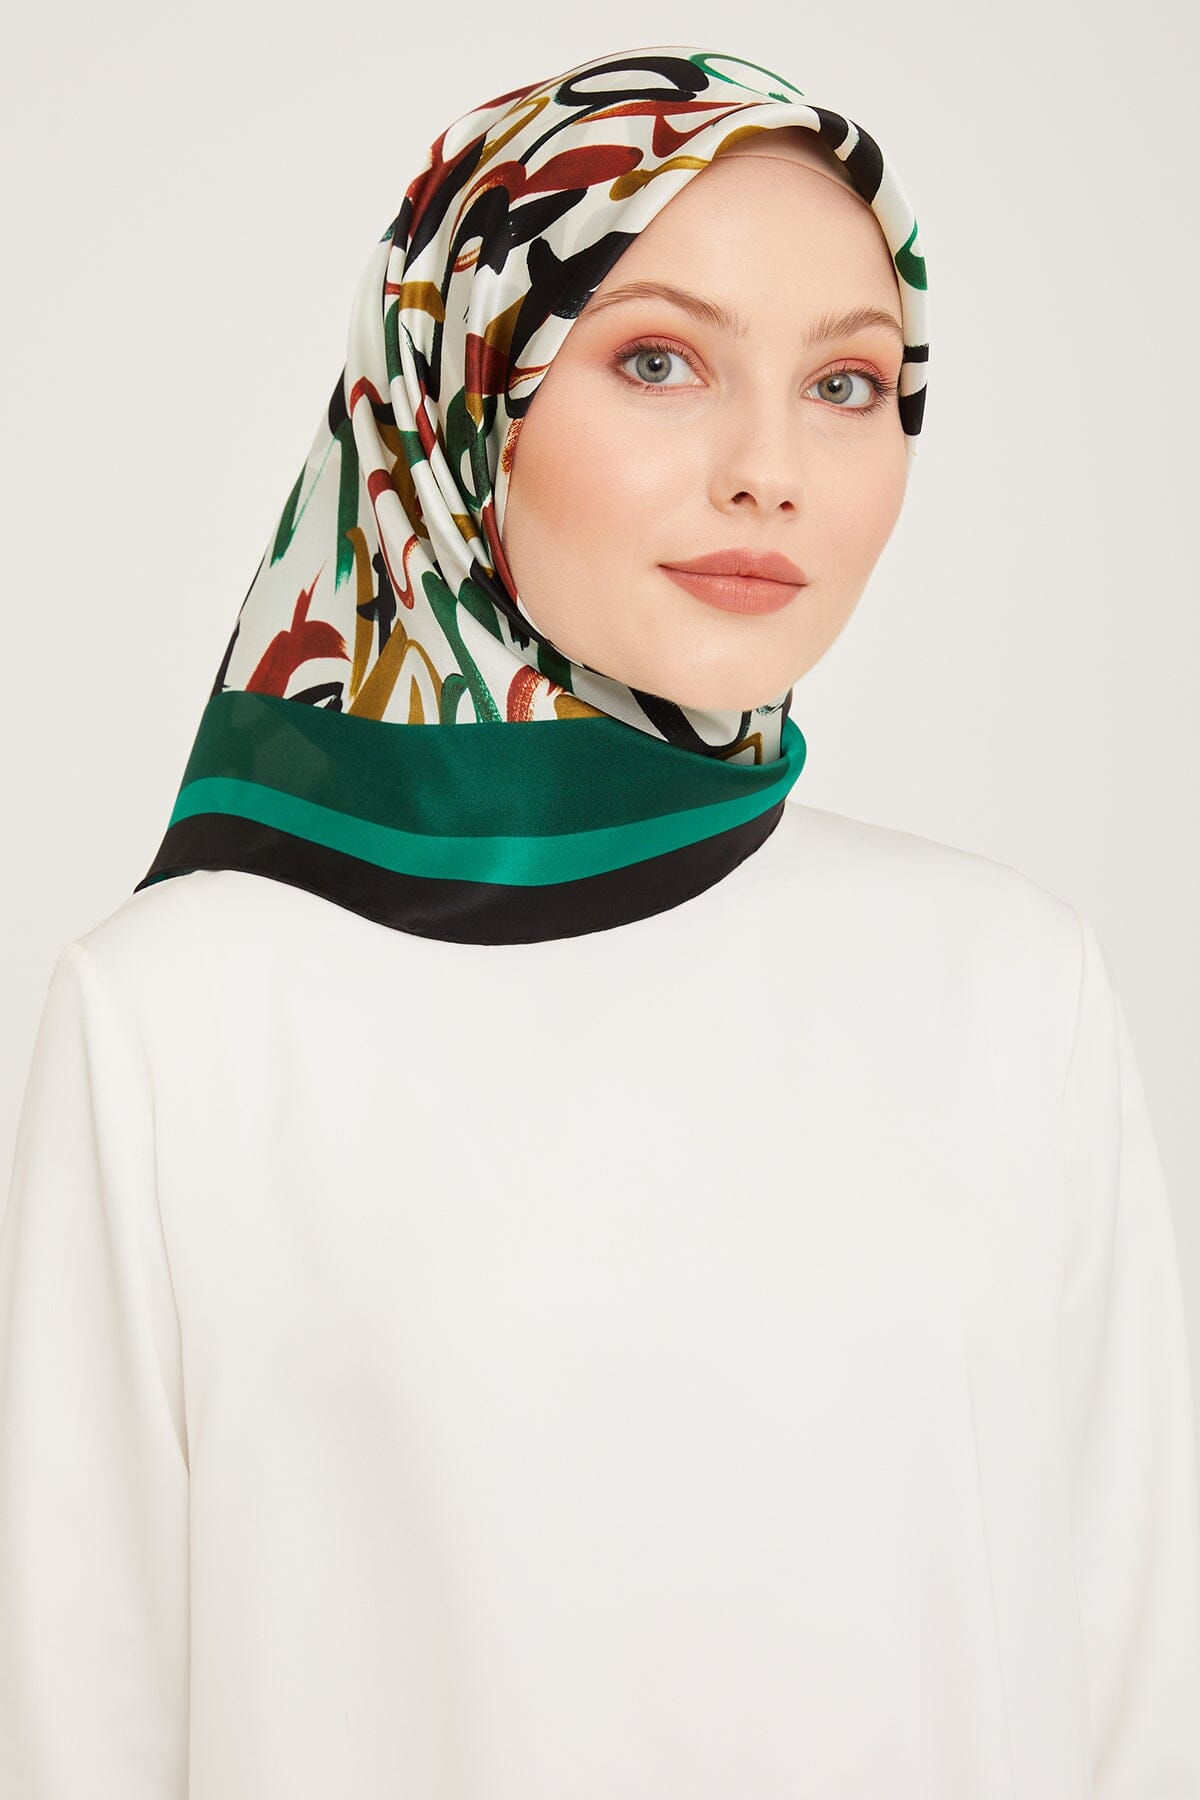 Armine Nudle Designer Silk Scarf #32 Silk Hijabs,Armine Armine 